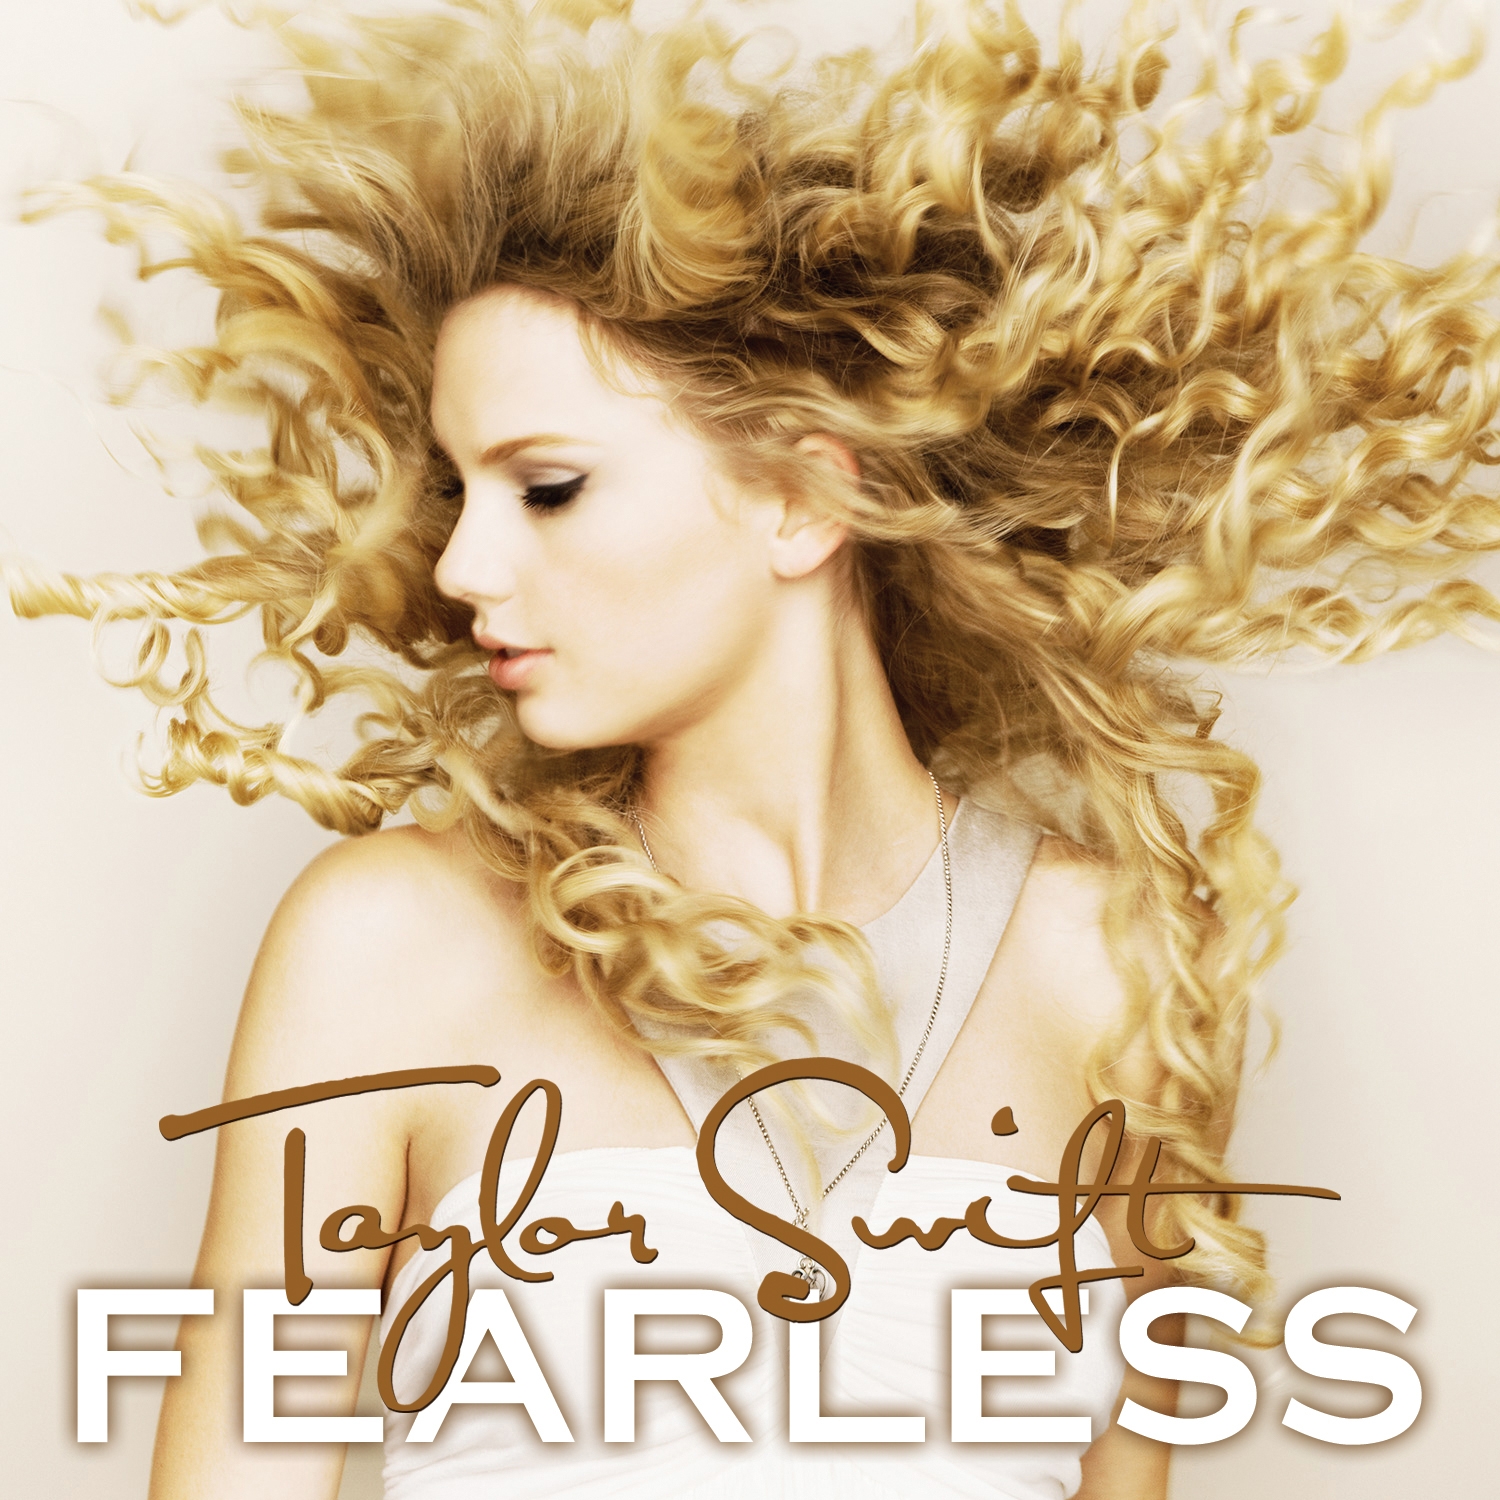 As melhores músicas da Taylor Swift - Playlist 